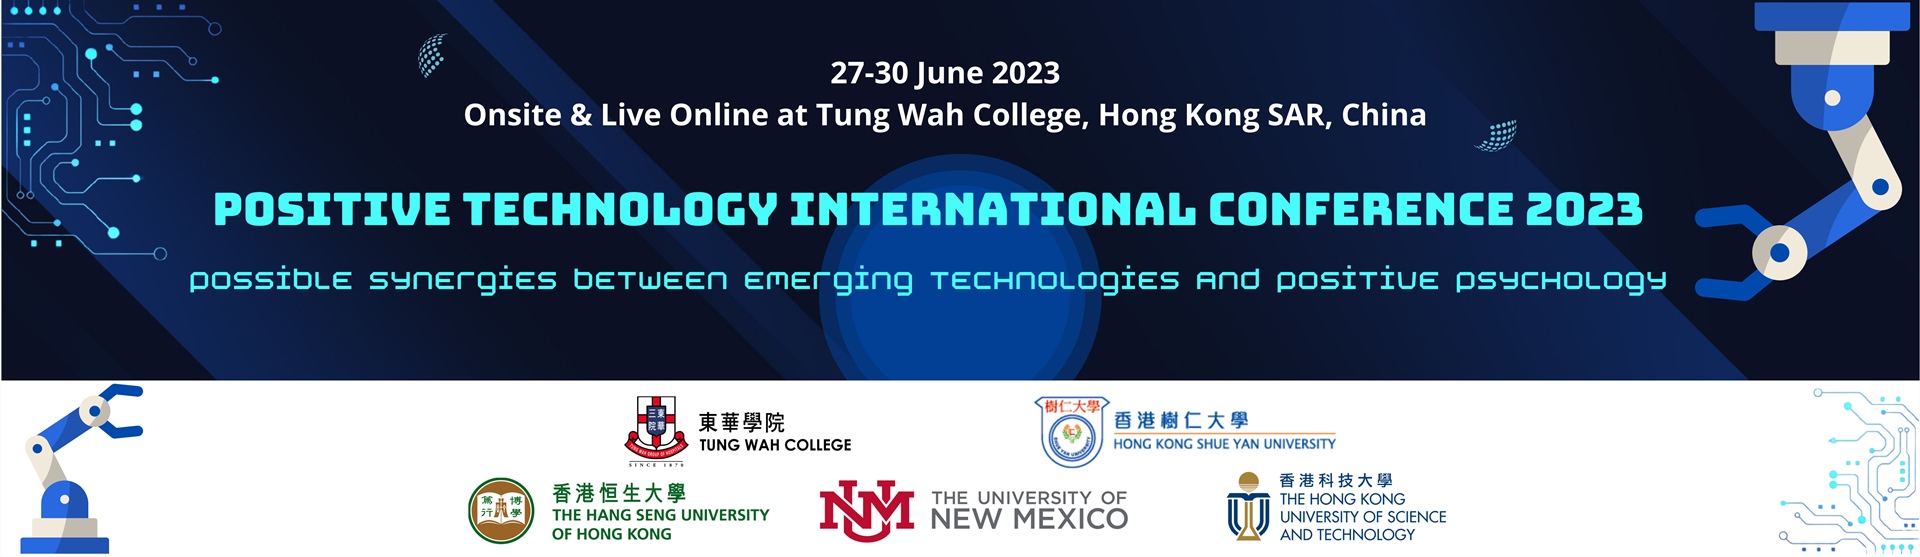 正向科技国际研讨会2023：新兴科技及正向心理学的协同效应